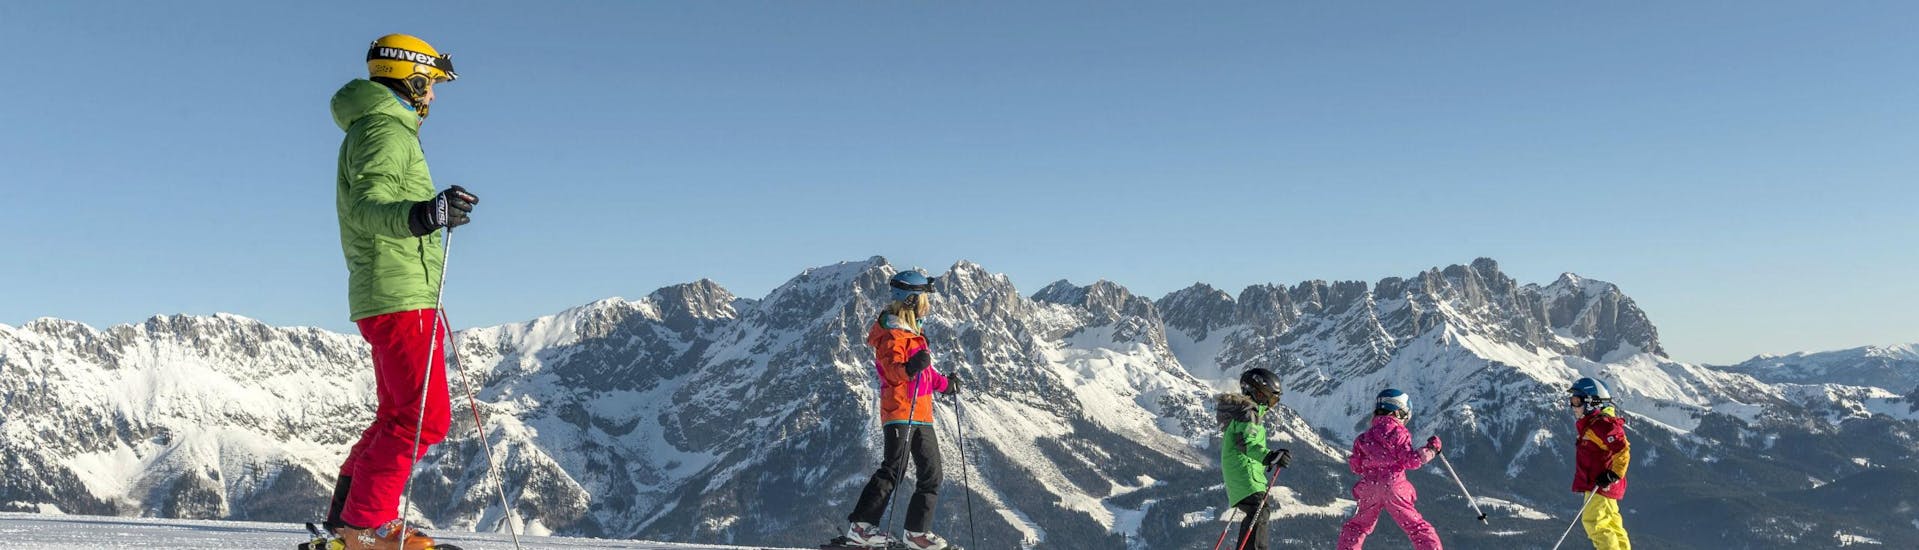 Tijdens een skiles met een skischool in Söll heb je een prachtig uitzicht op zonnige bergen.